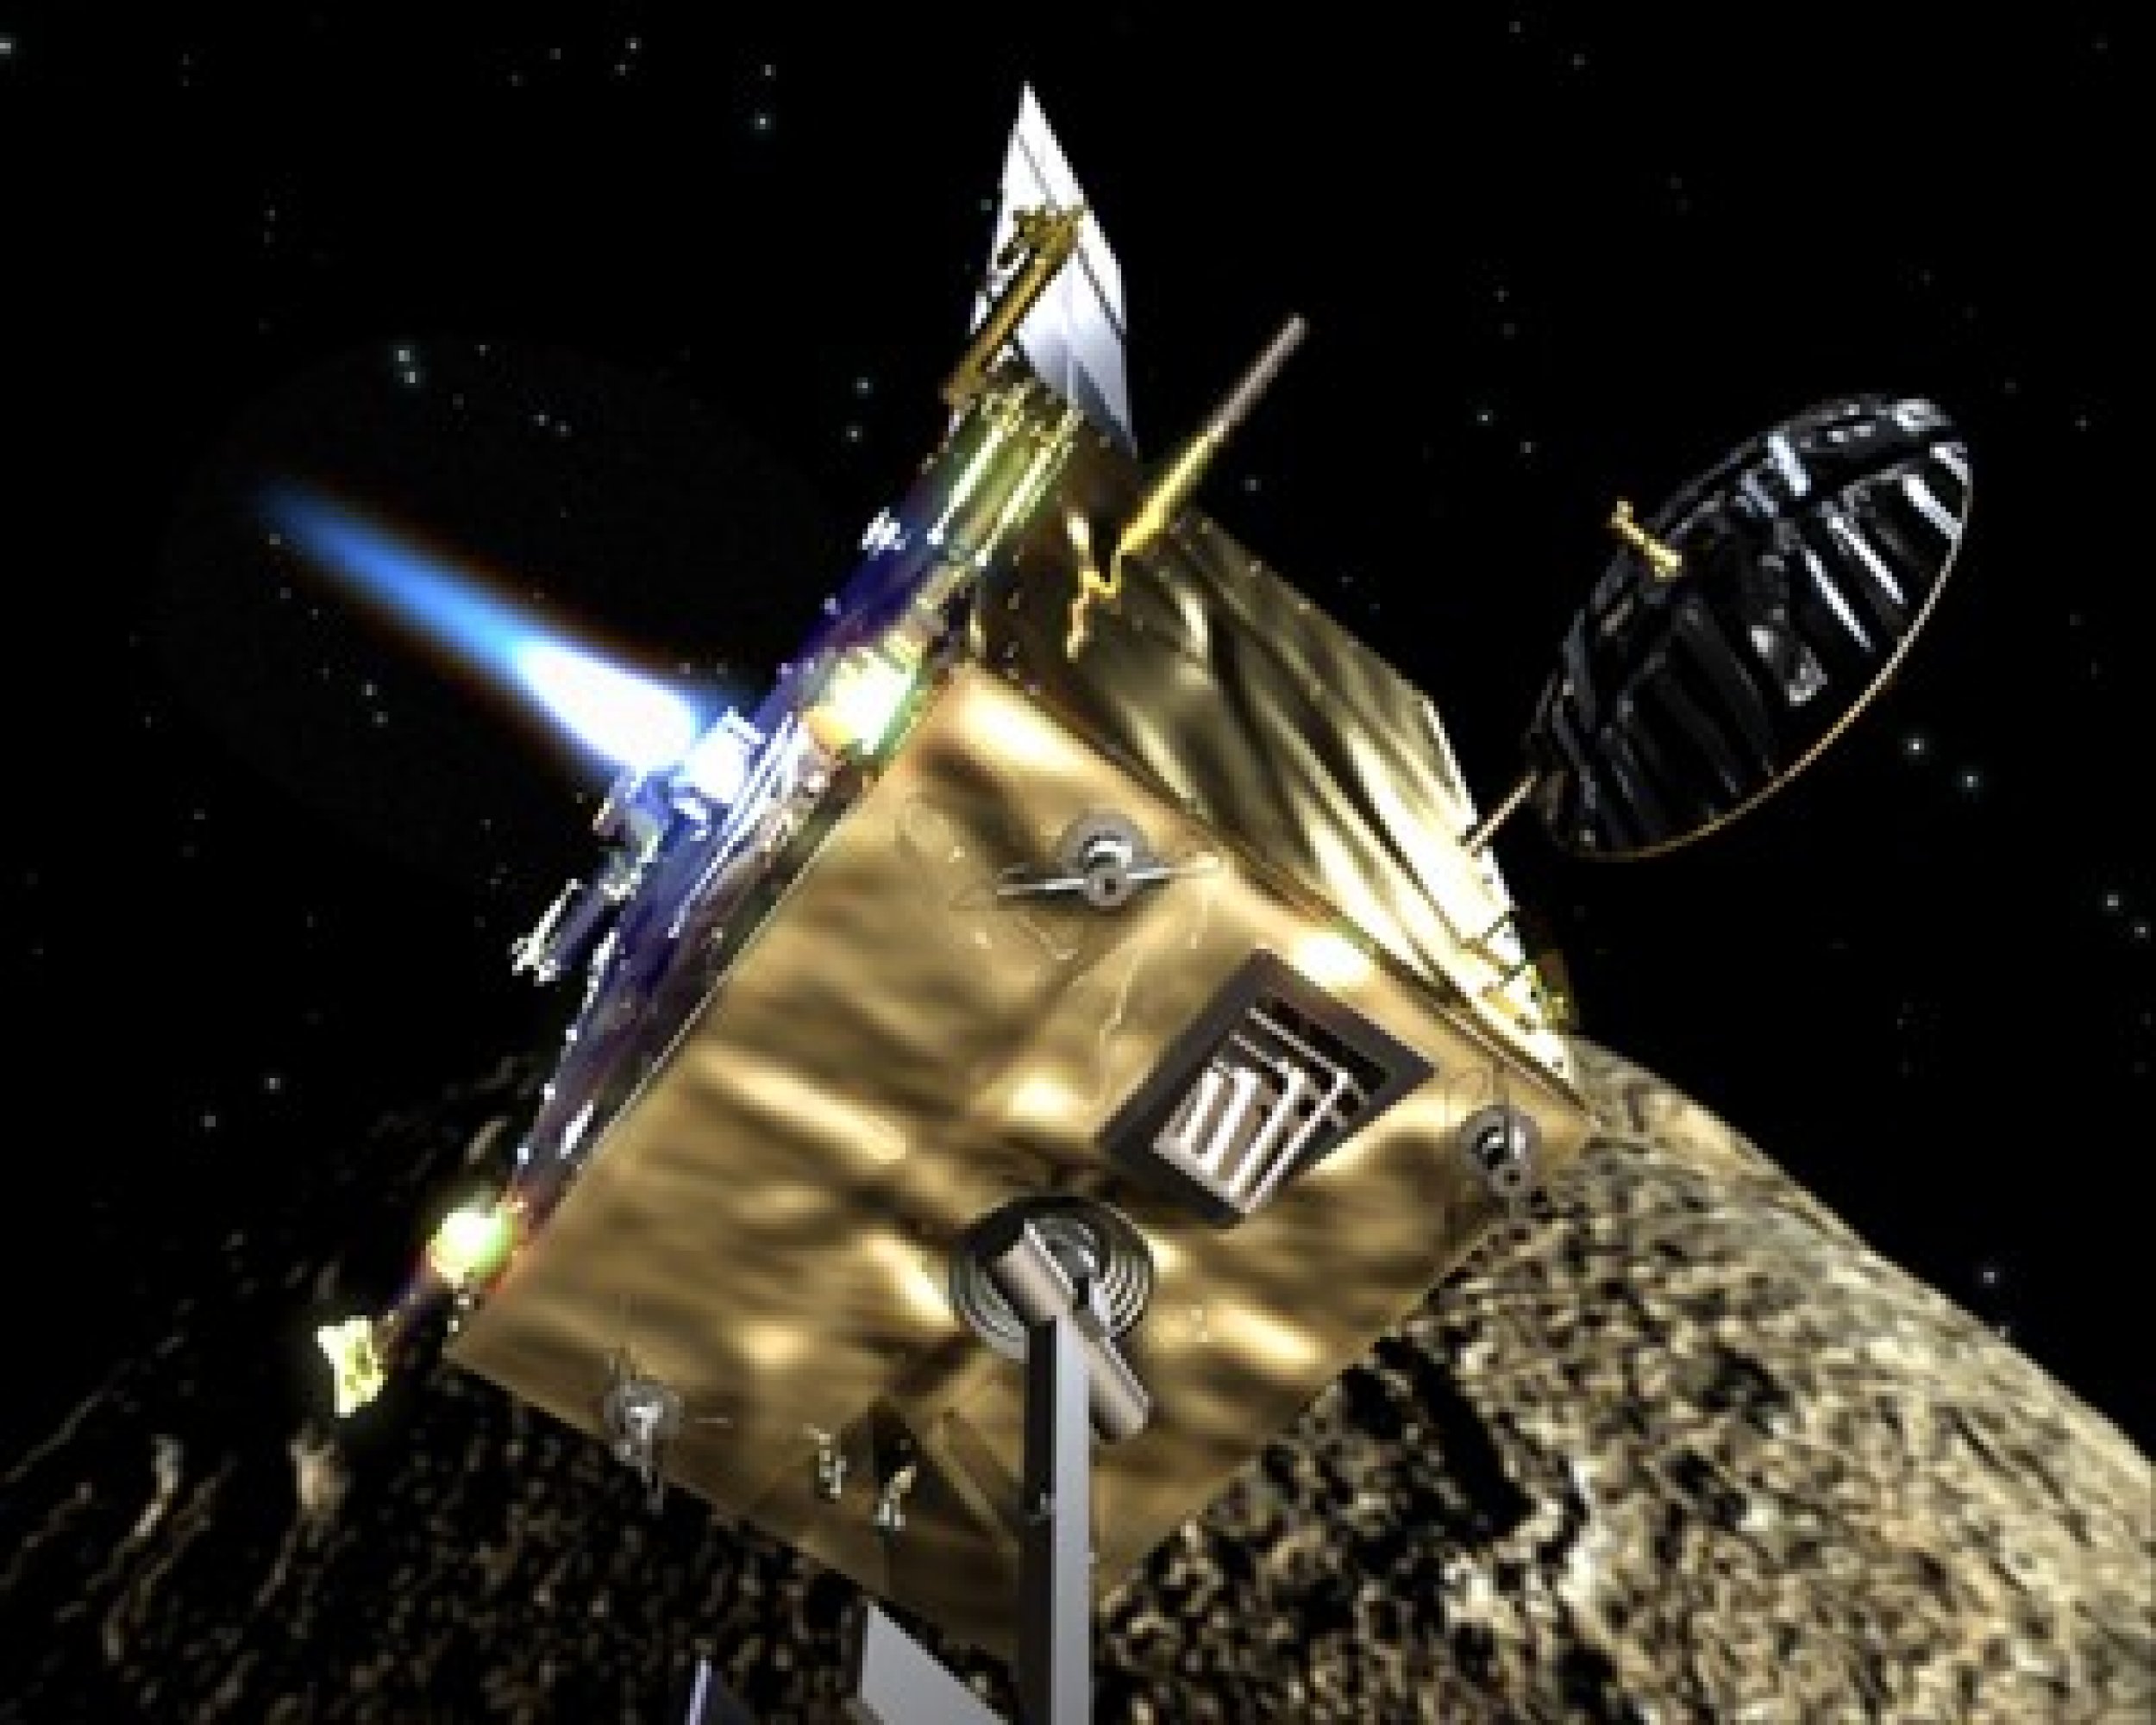 Orbiter spacecraft